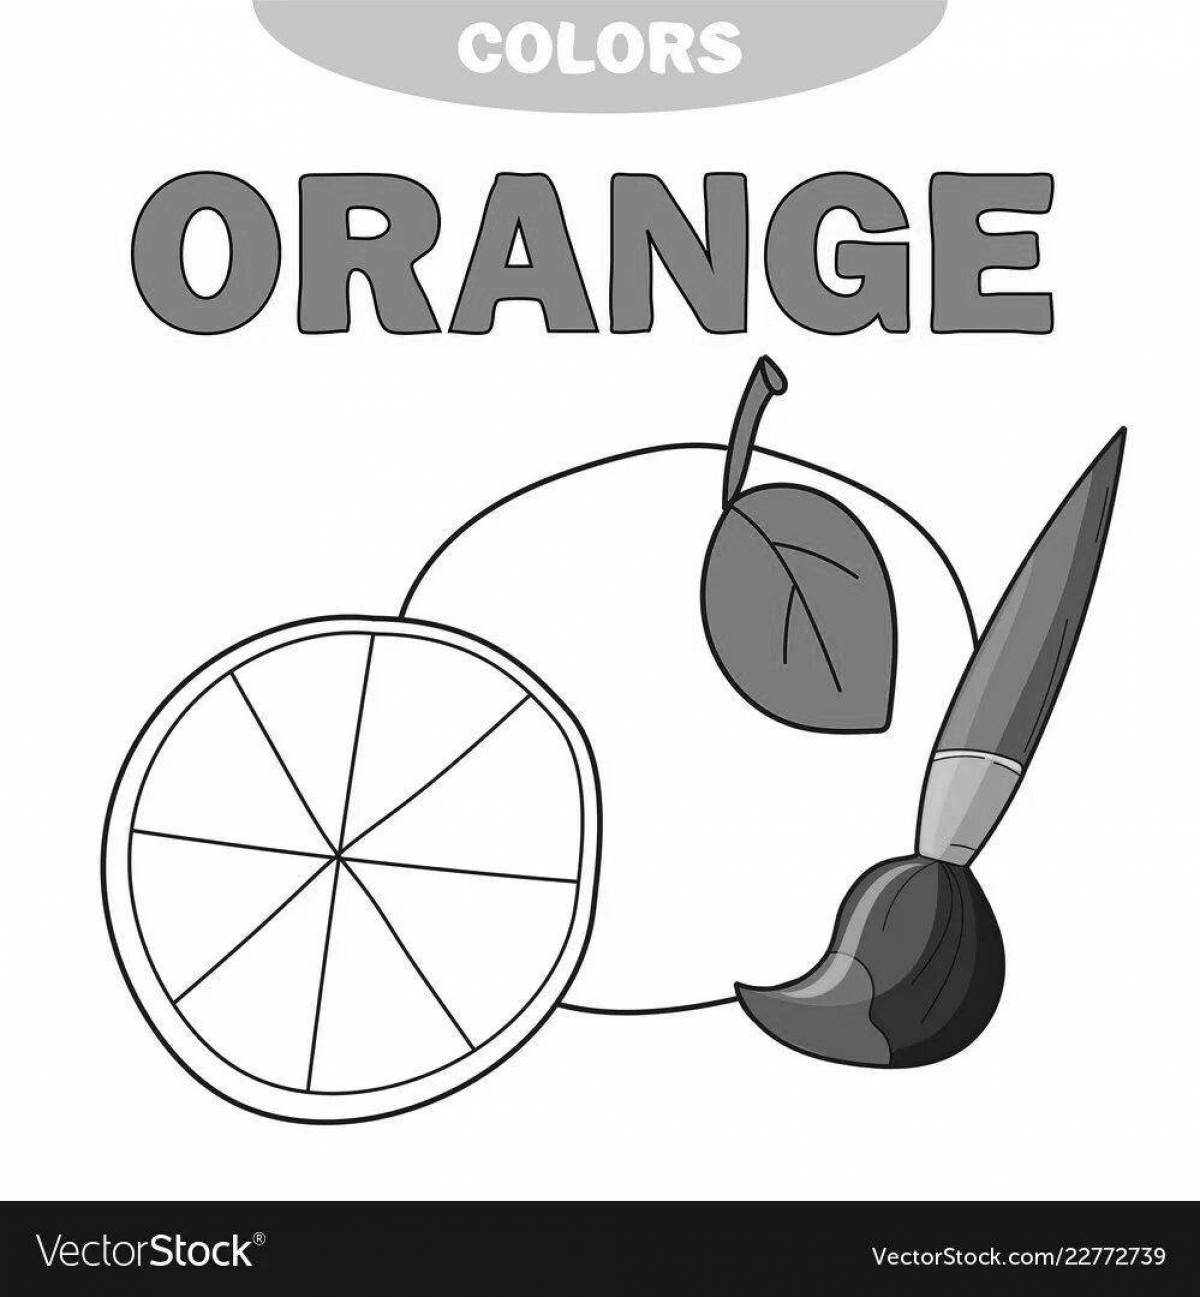 Brilliant orange coloring